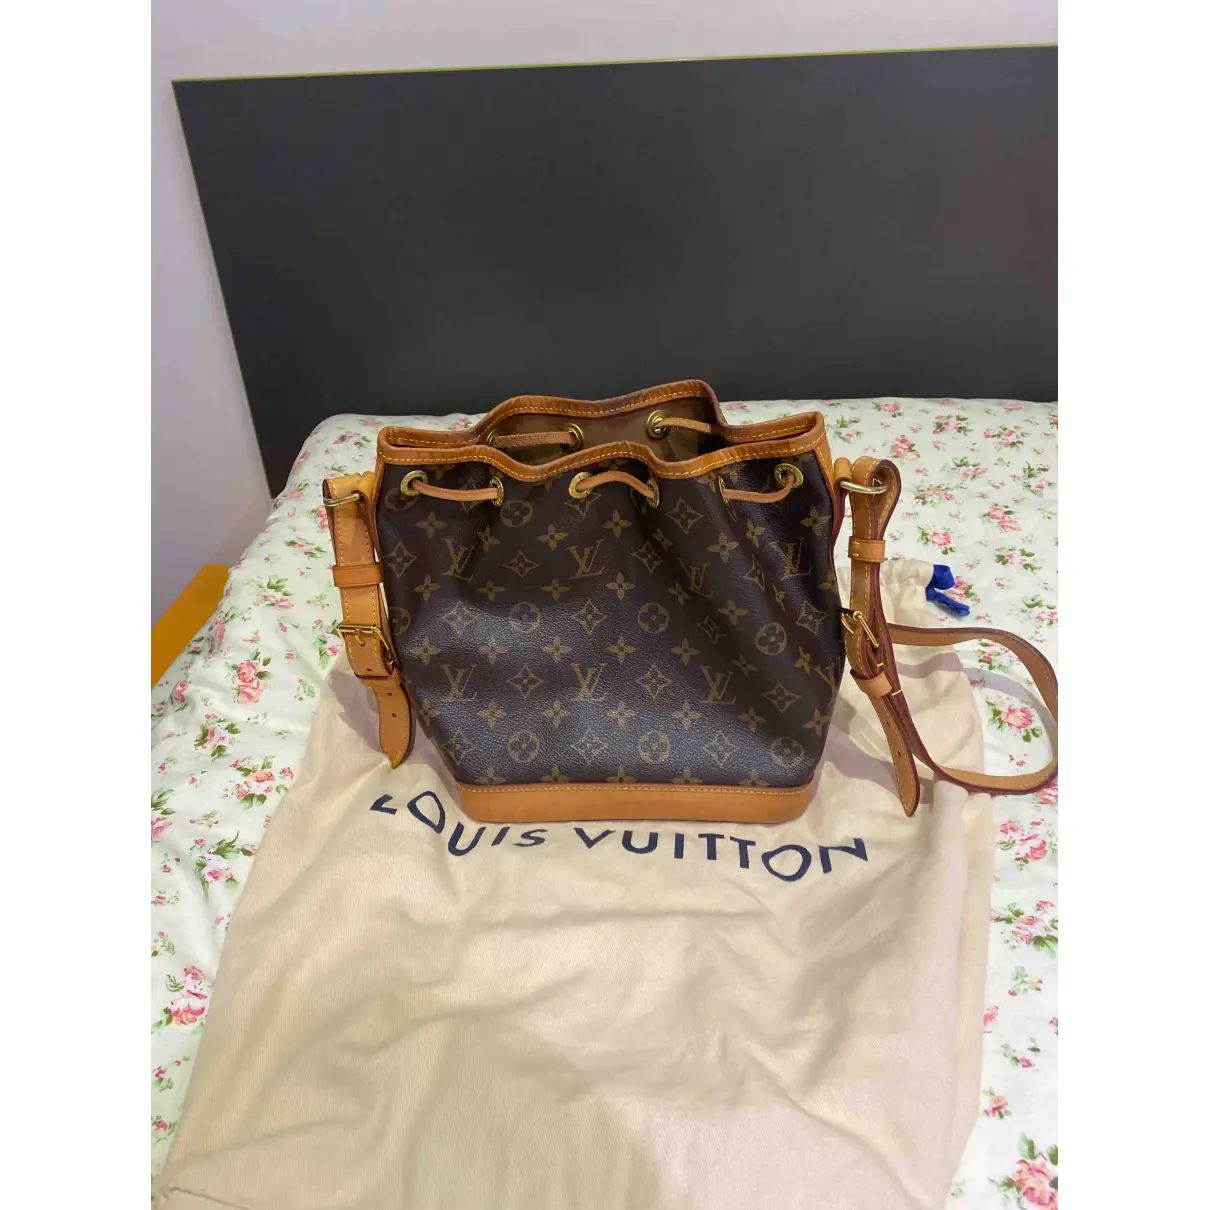 Buy Louis Vuitton Nano Noé cloth handbag online